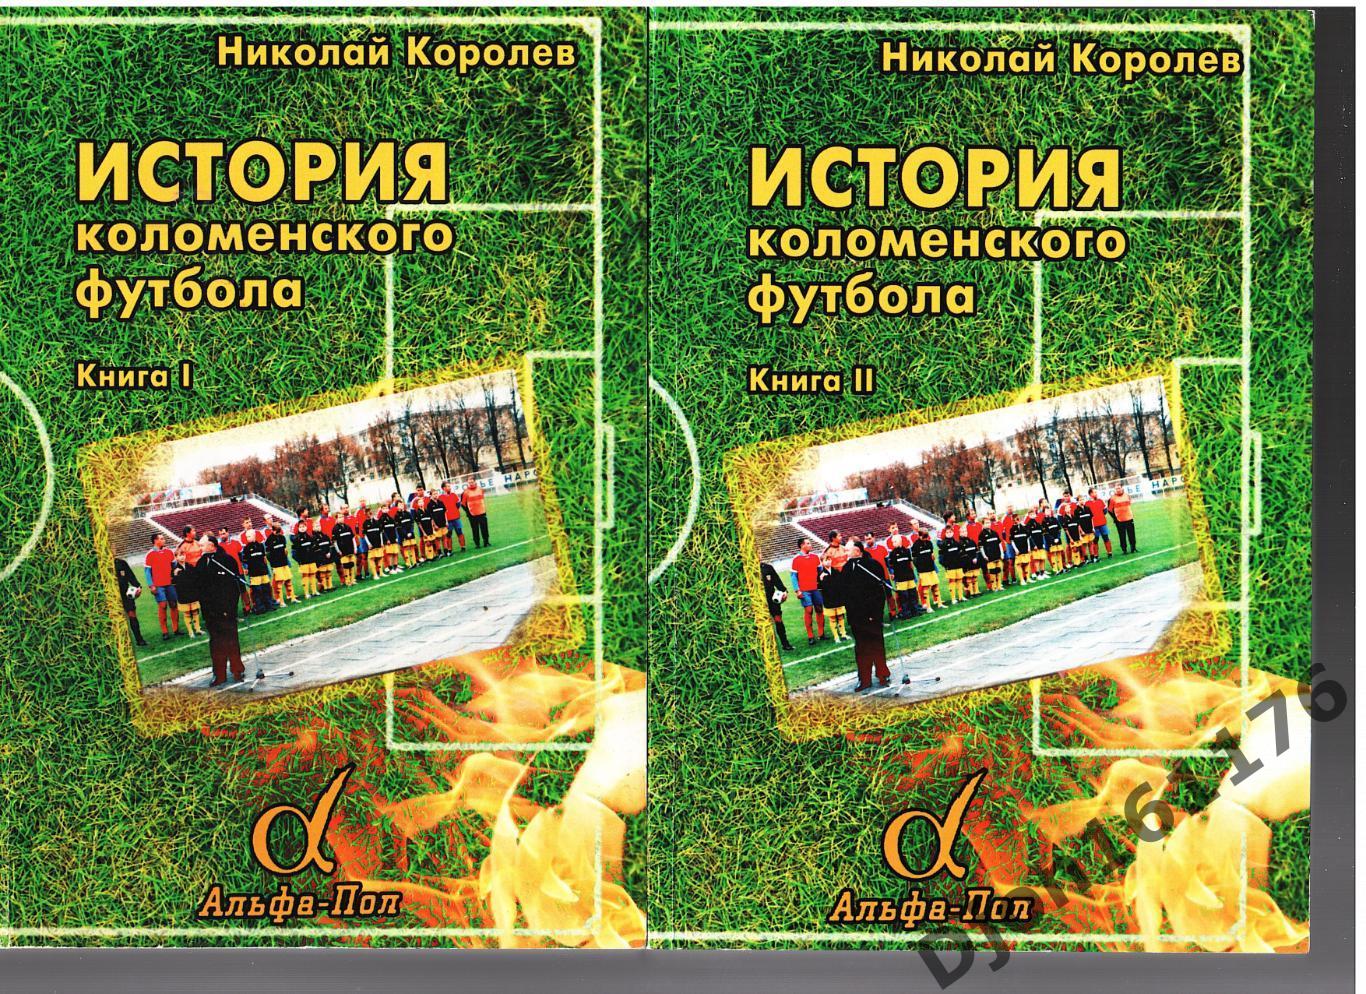 «История Коломенского футбола. Книга I (части I-III)»; Книга II (части IV-VI)